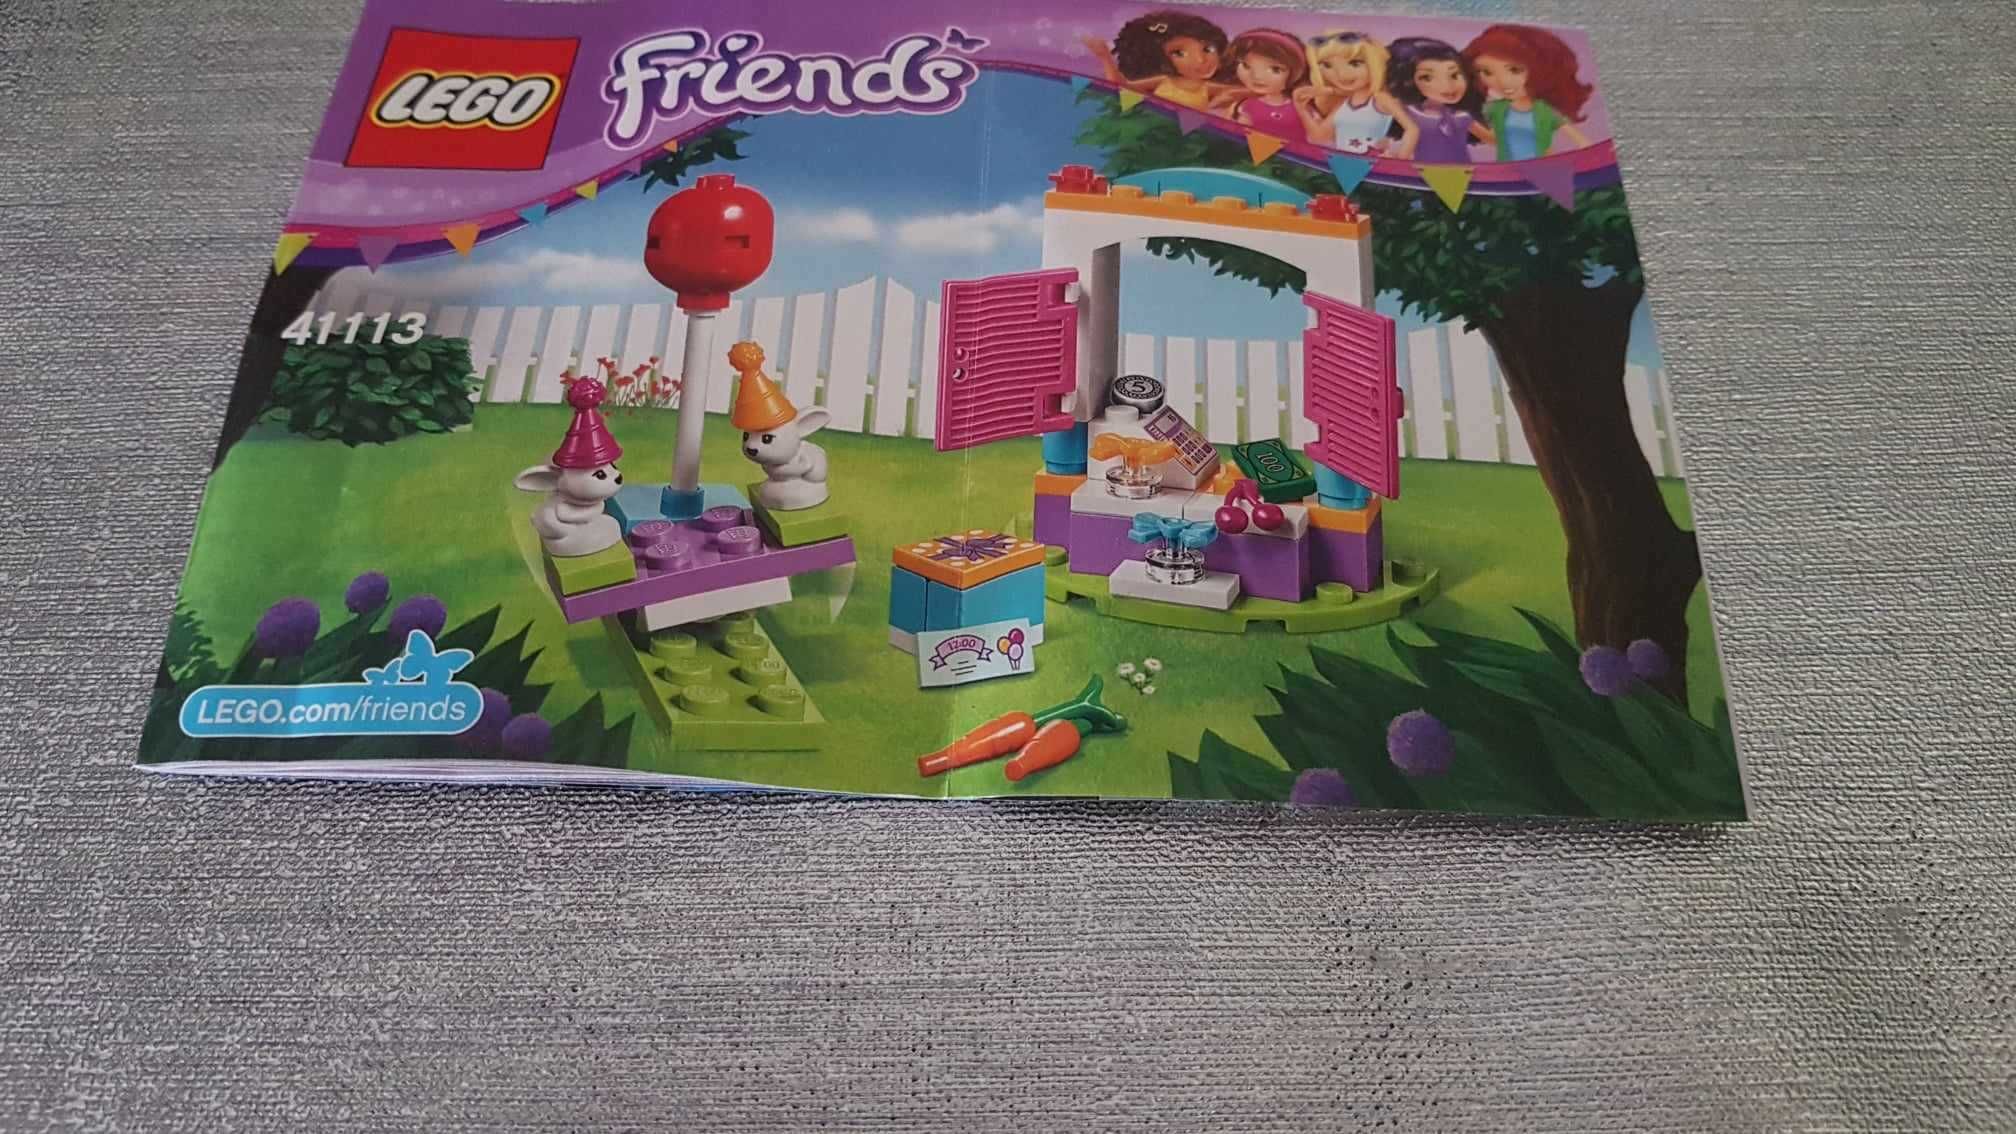 Lego Friends 41113 Sklep z prezentami